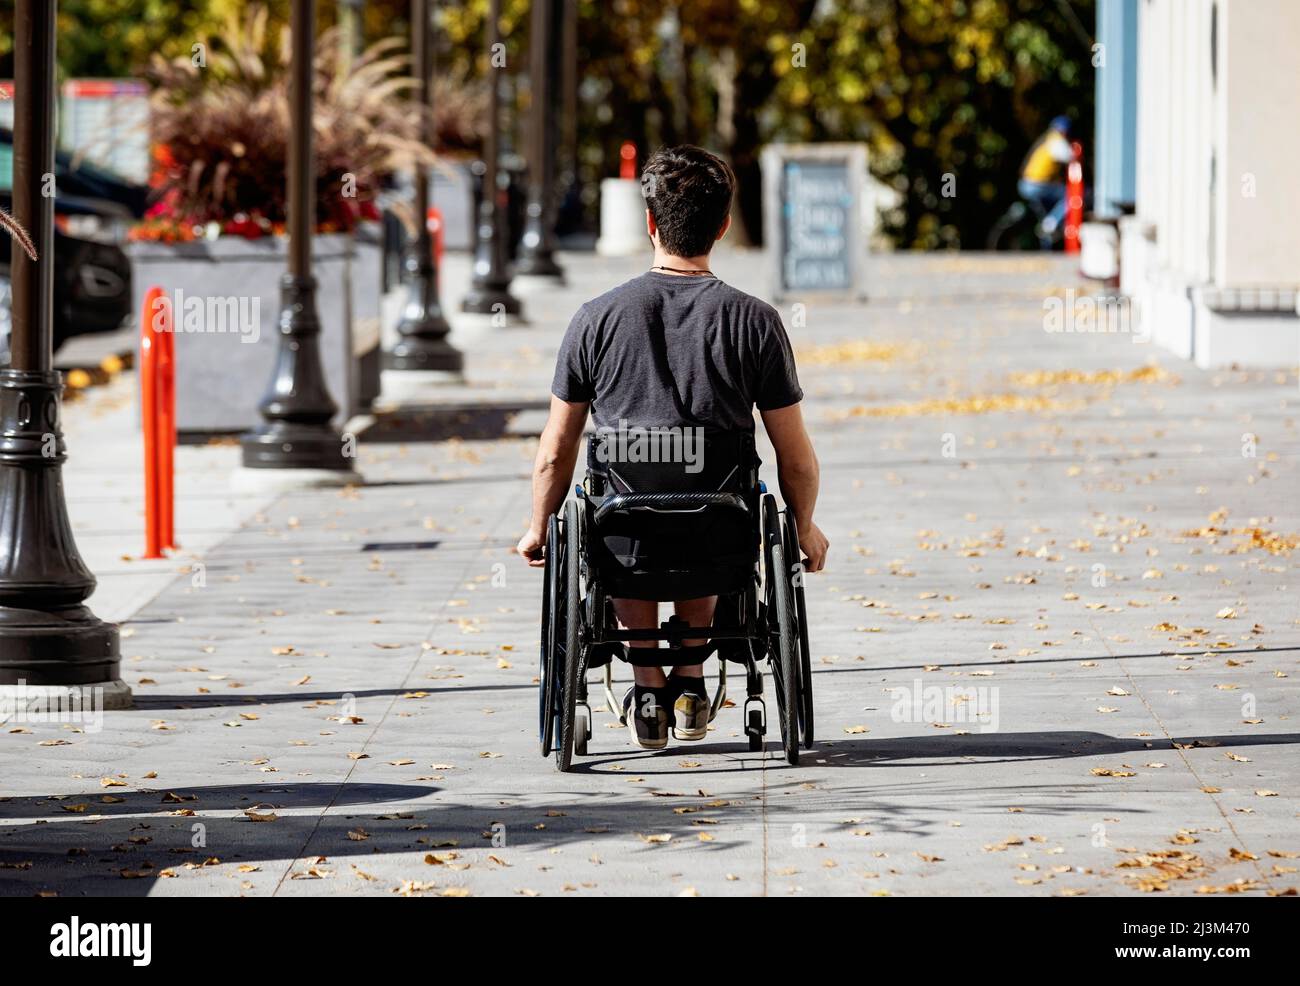 Ein junger Querschnittsgelähmter im Rollstuhl, der an einem schönen Herbsttag einen Stadtpfad entlang geht; Edmonton, Alberta, Kanada Stockfoto